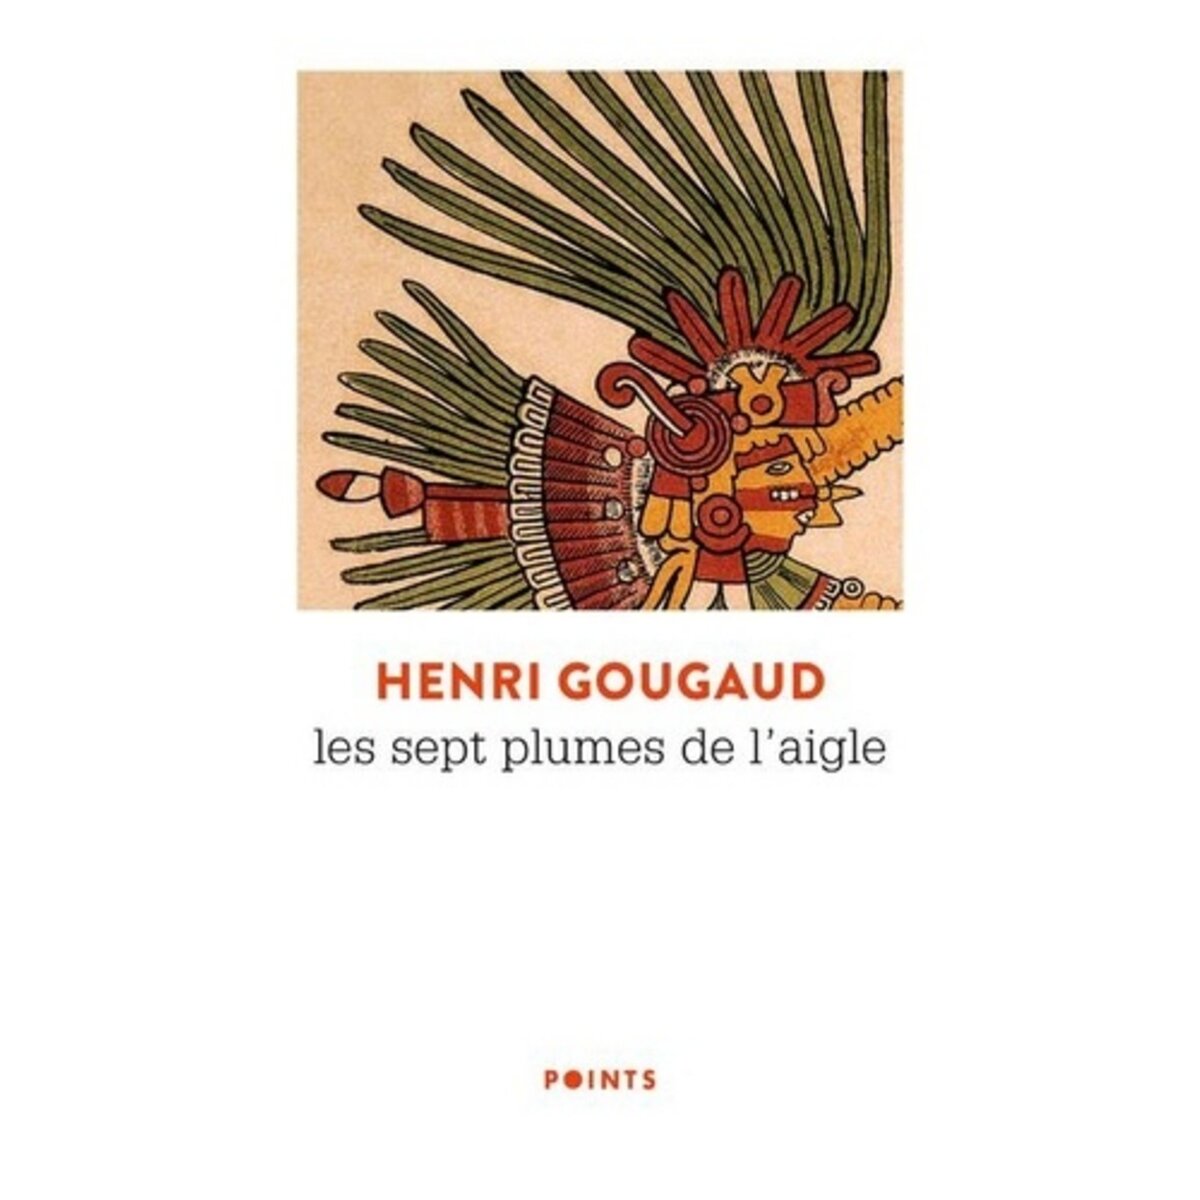  LES SEPT PLUMES DE L'AIGLE, Gougaud Henri